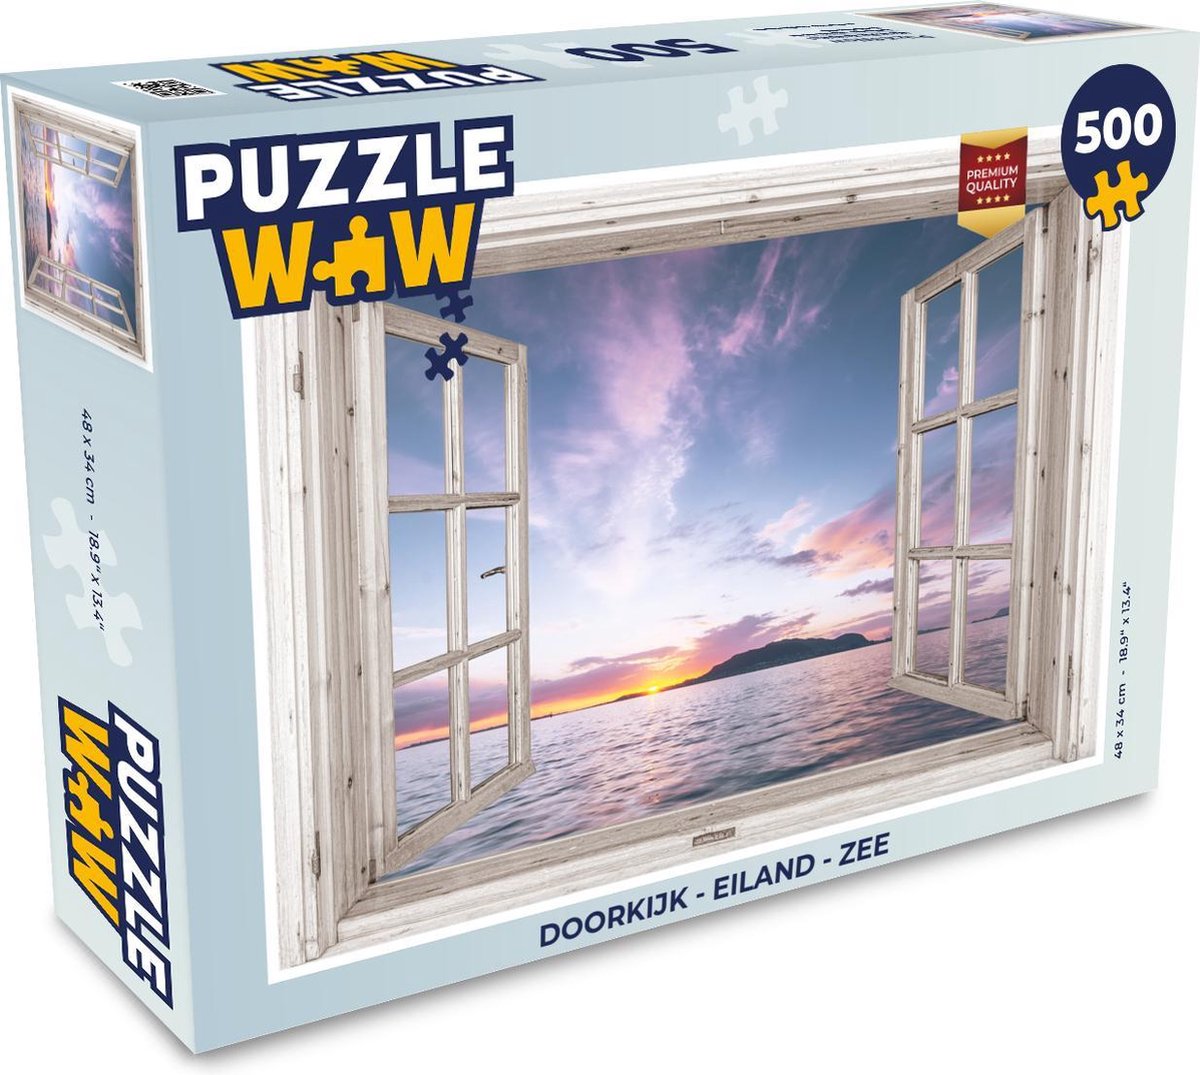 Afbeelding van product PuzzleWow  Puzzel Doorkijk - Eiland - Zee - Legpuzzel - Puzzel 500 stukjes